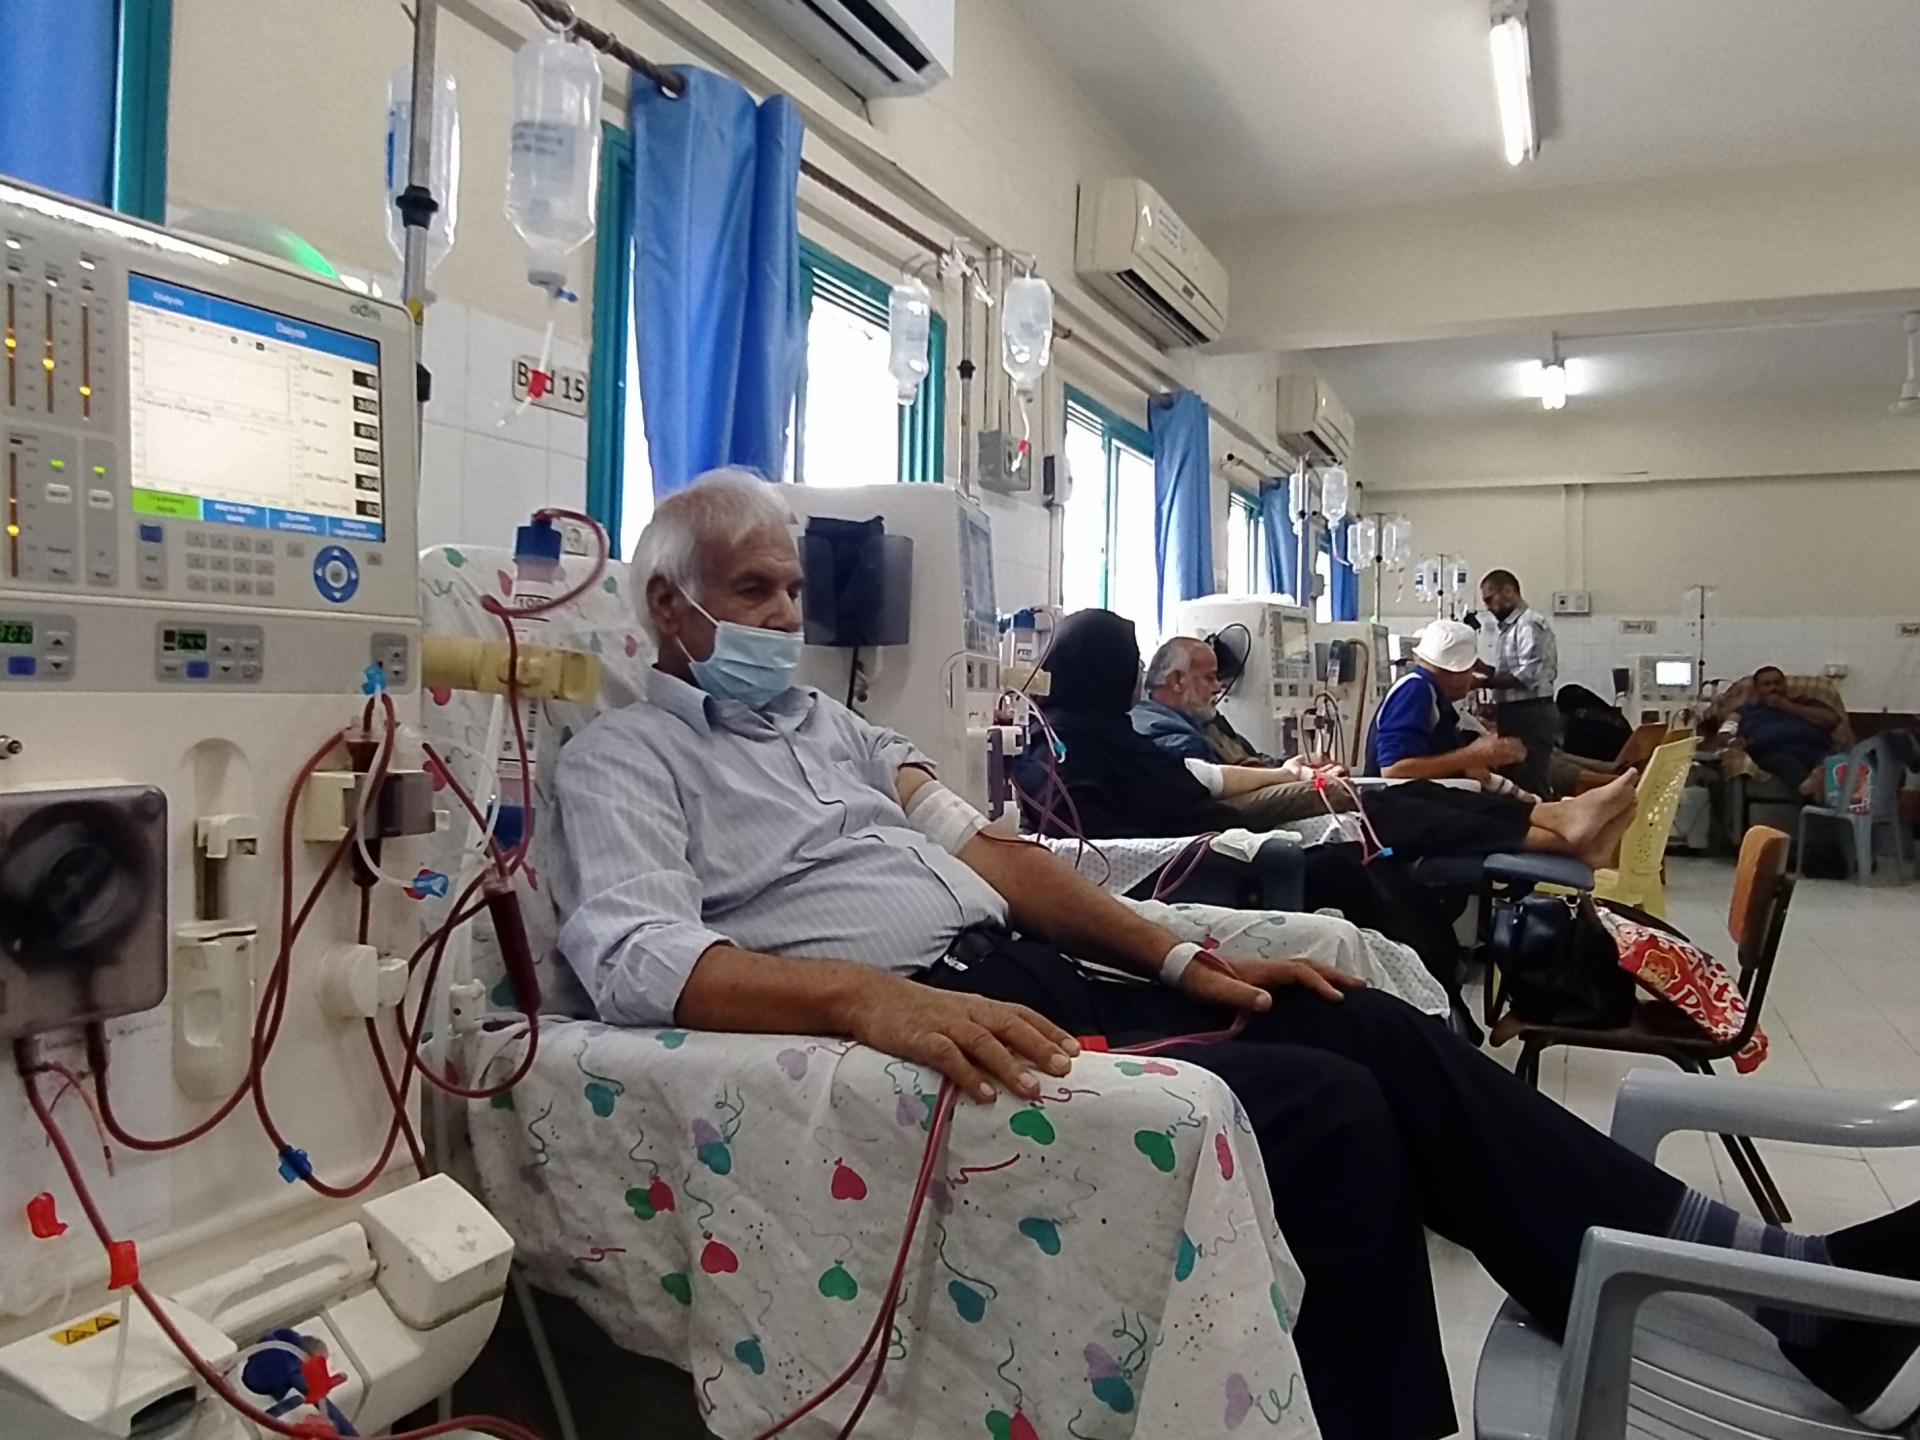 إسرائيل تقصف محيط مستشفى الشفاء وقيادي بحماس يحذر من “مجزرة جديدة” | أخبار – البوكس نيوز